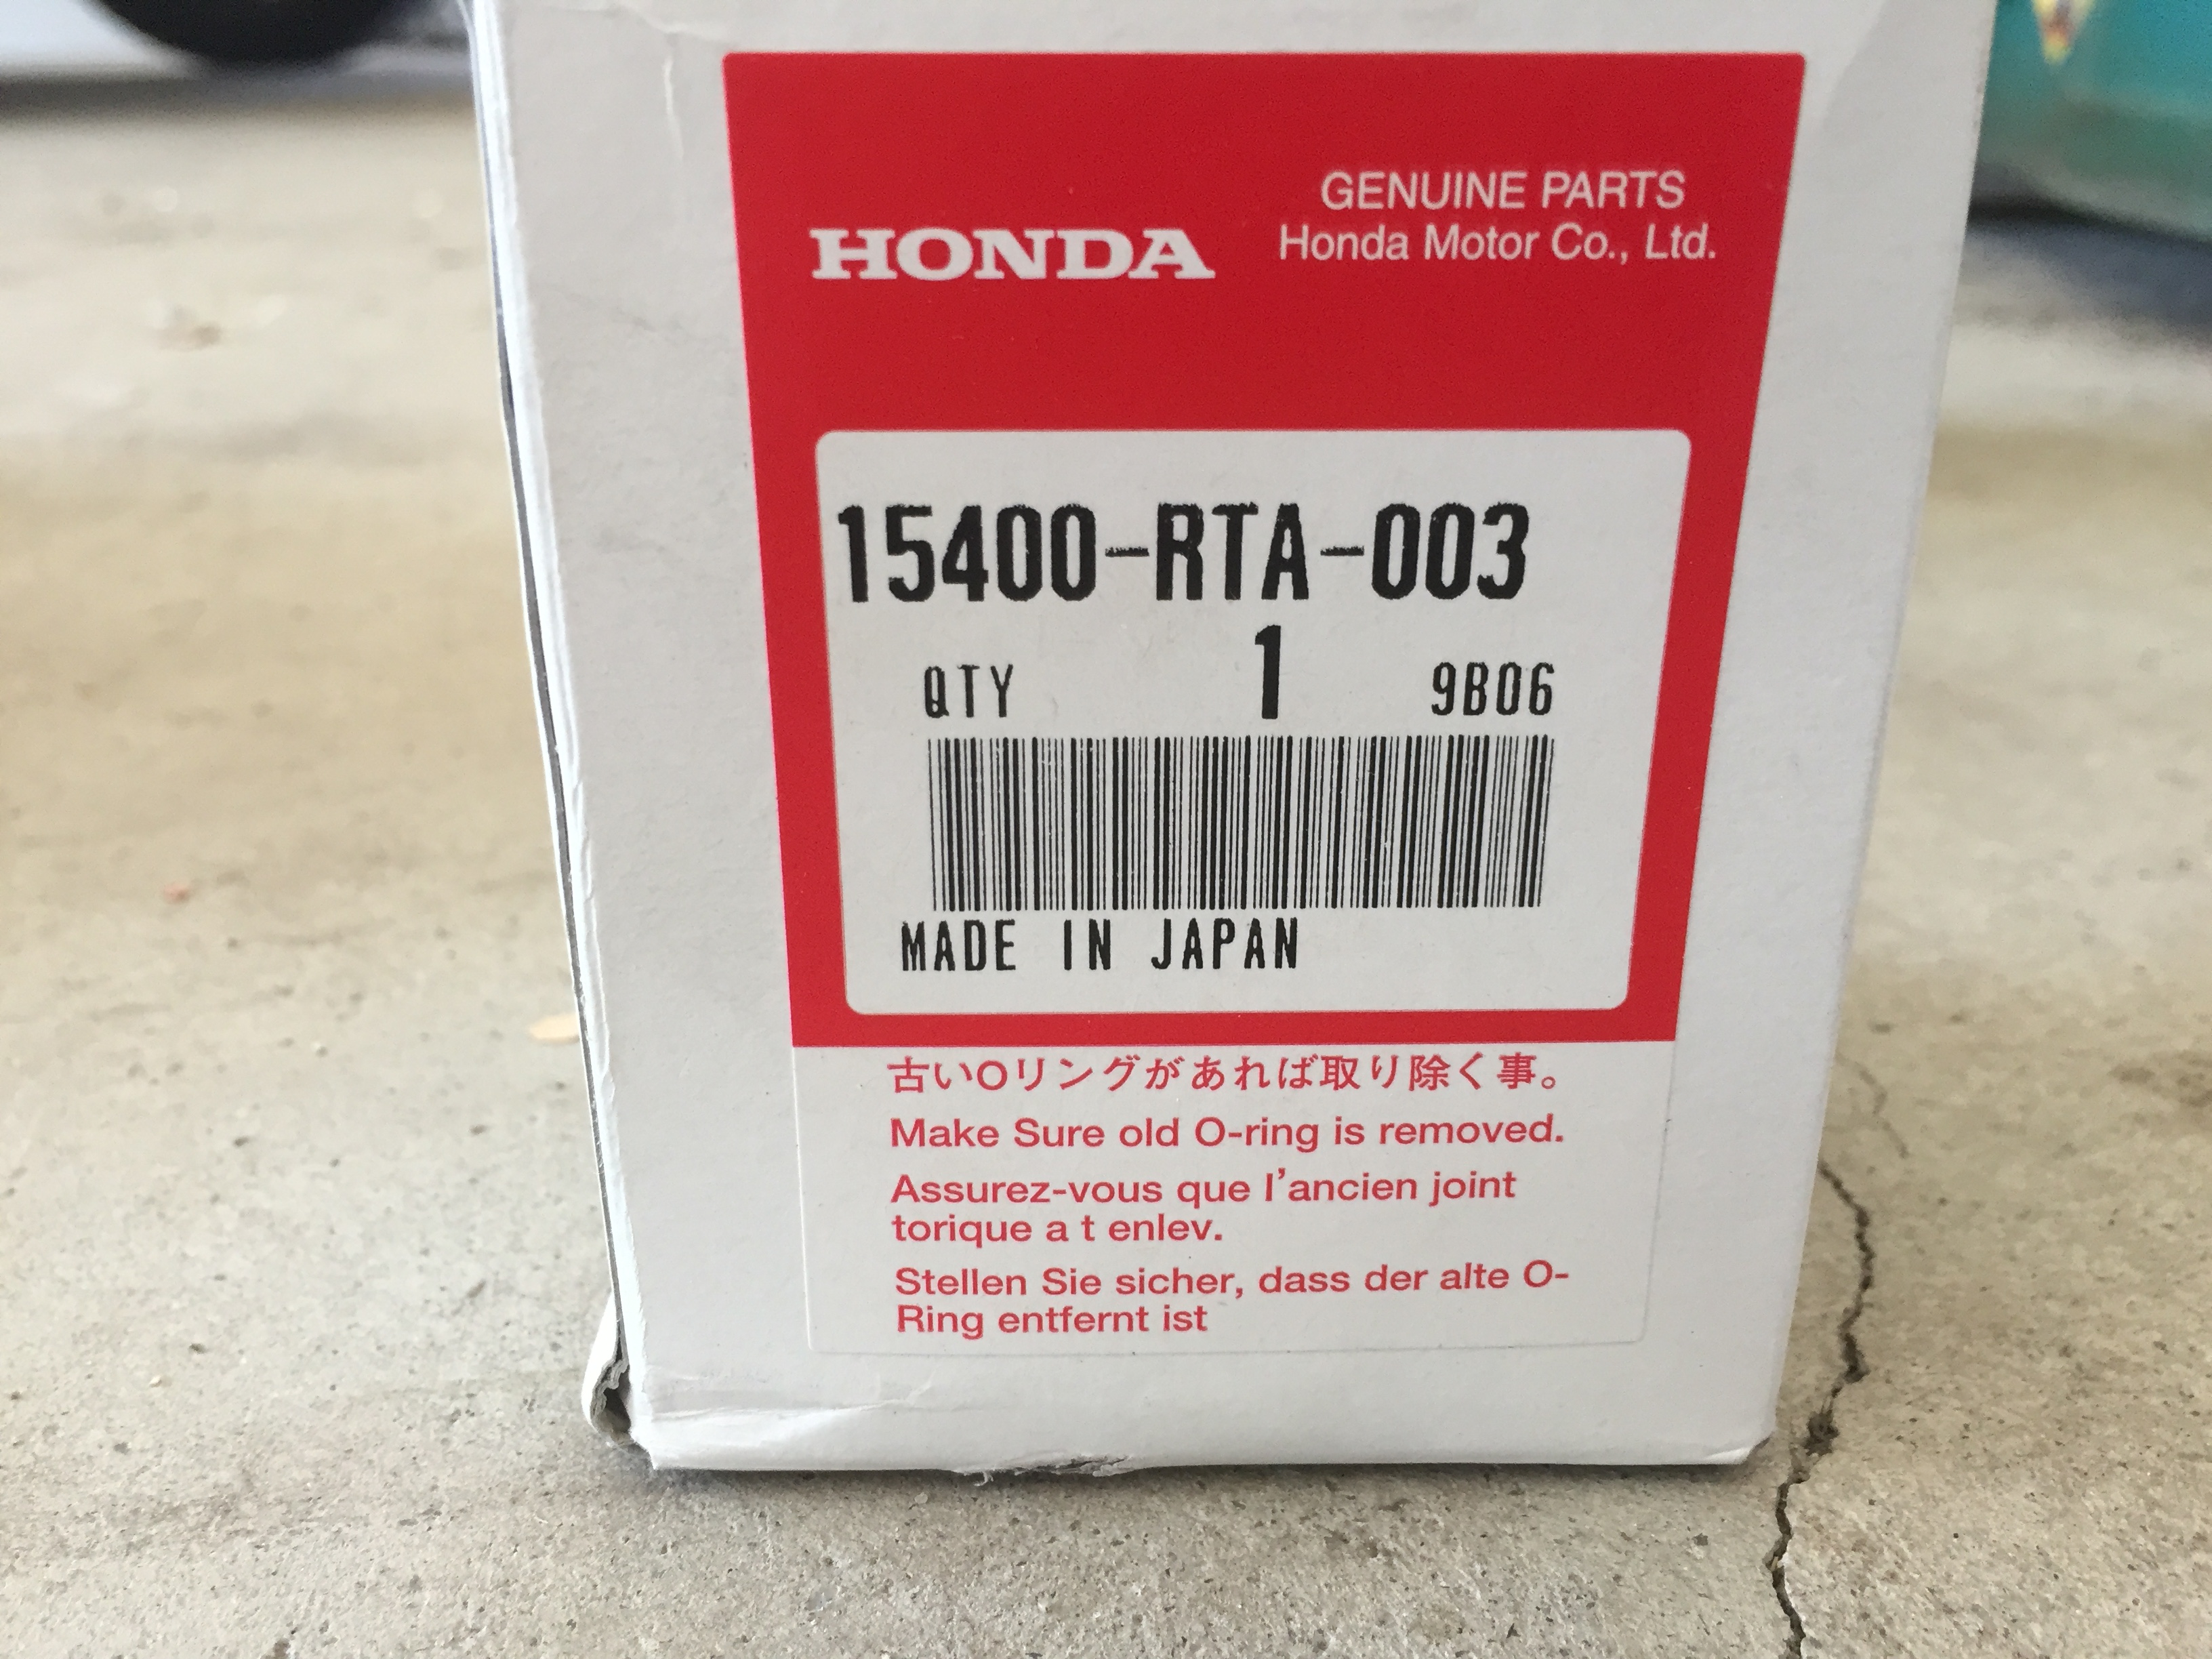 Genuine Honda OEM Service Parts